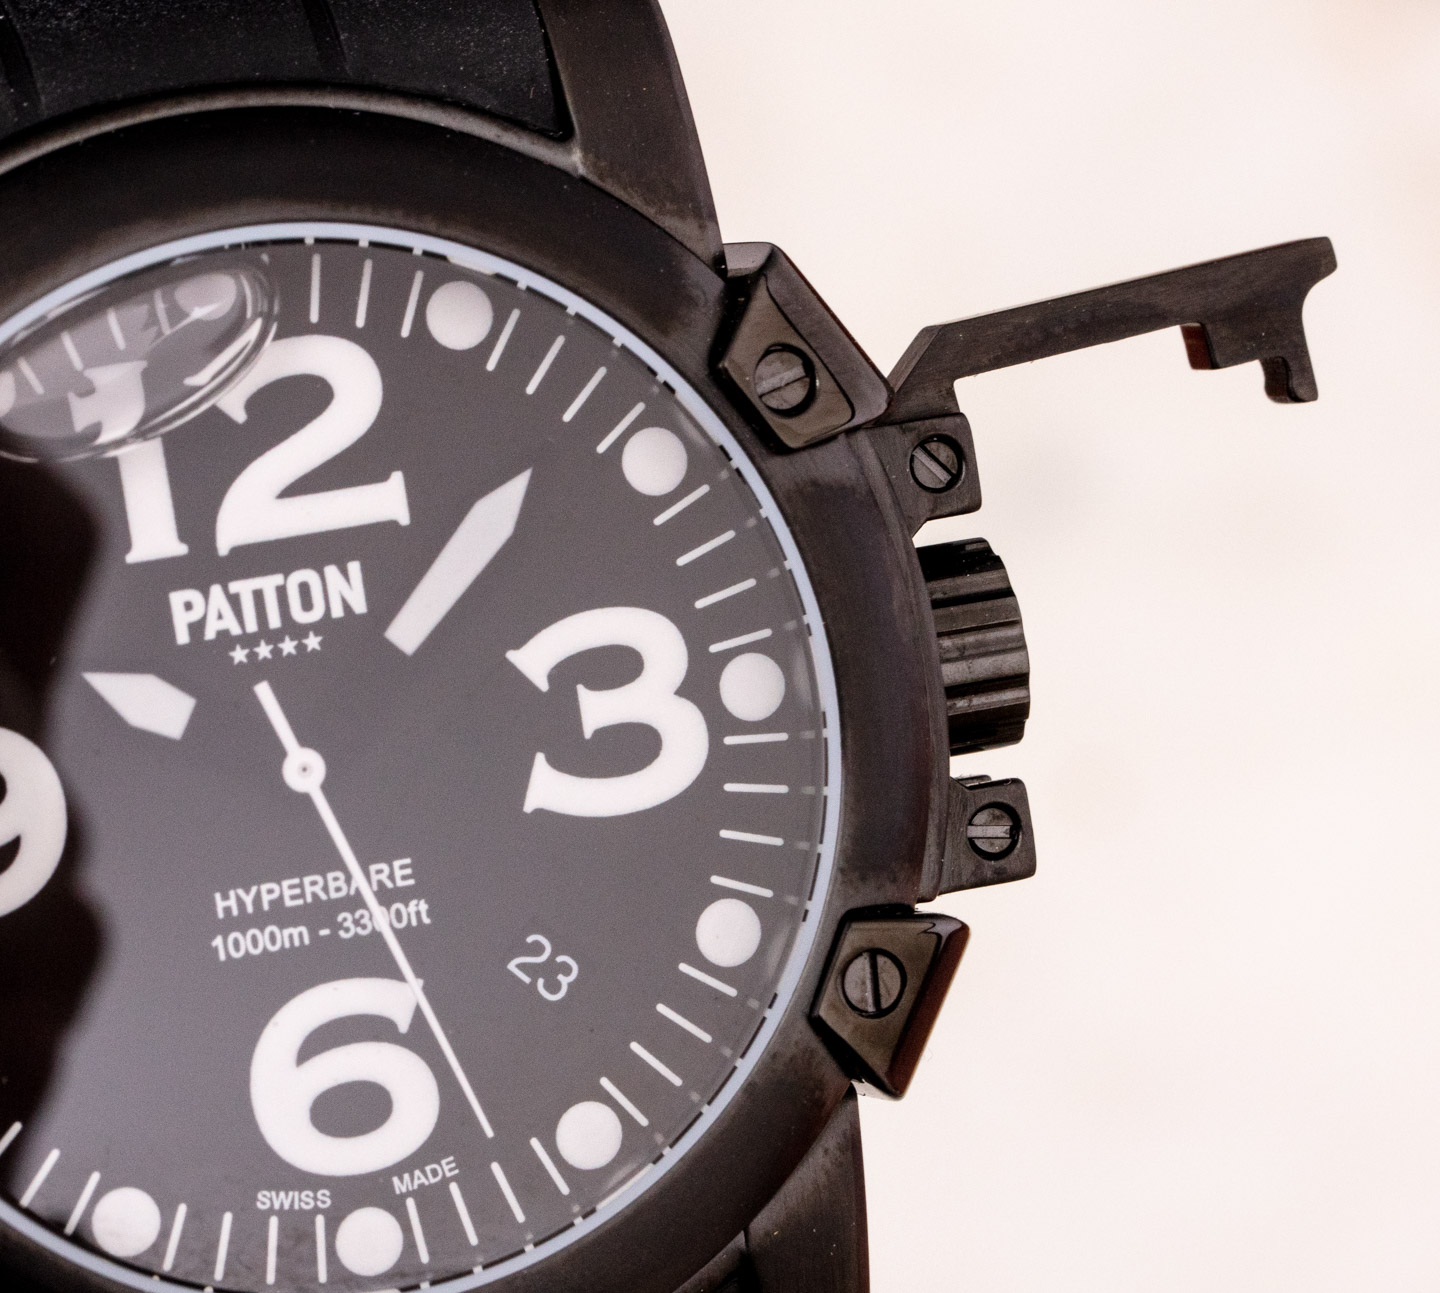 Patton品牌矿物油填充的Hyperbare手表